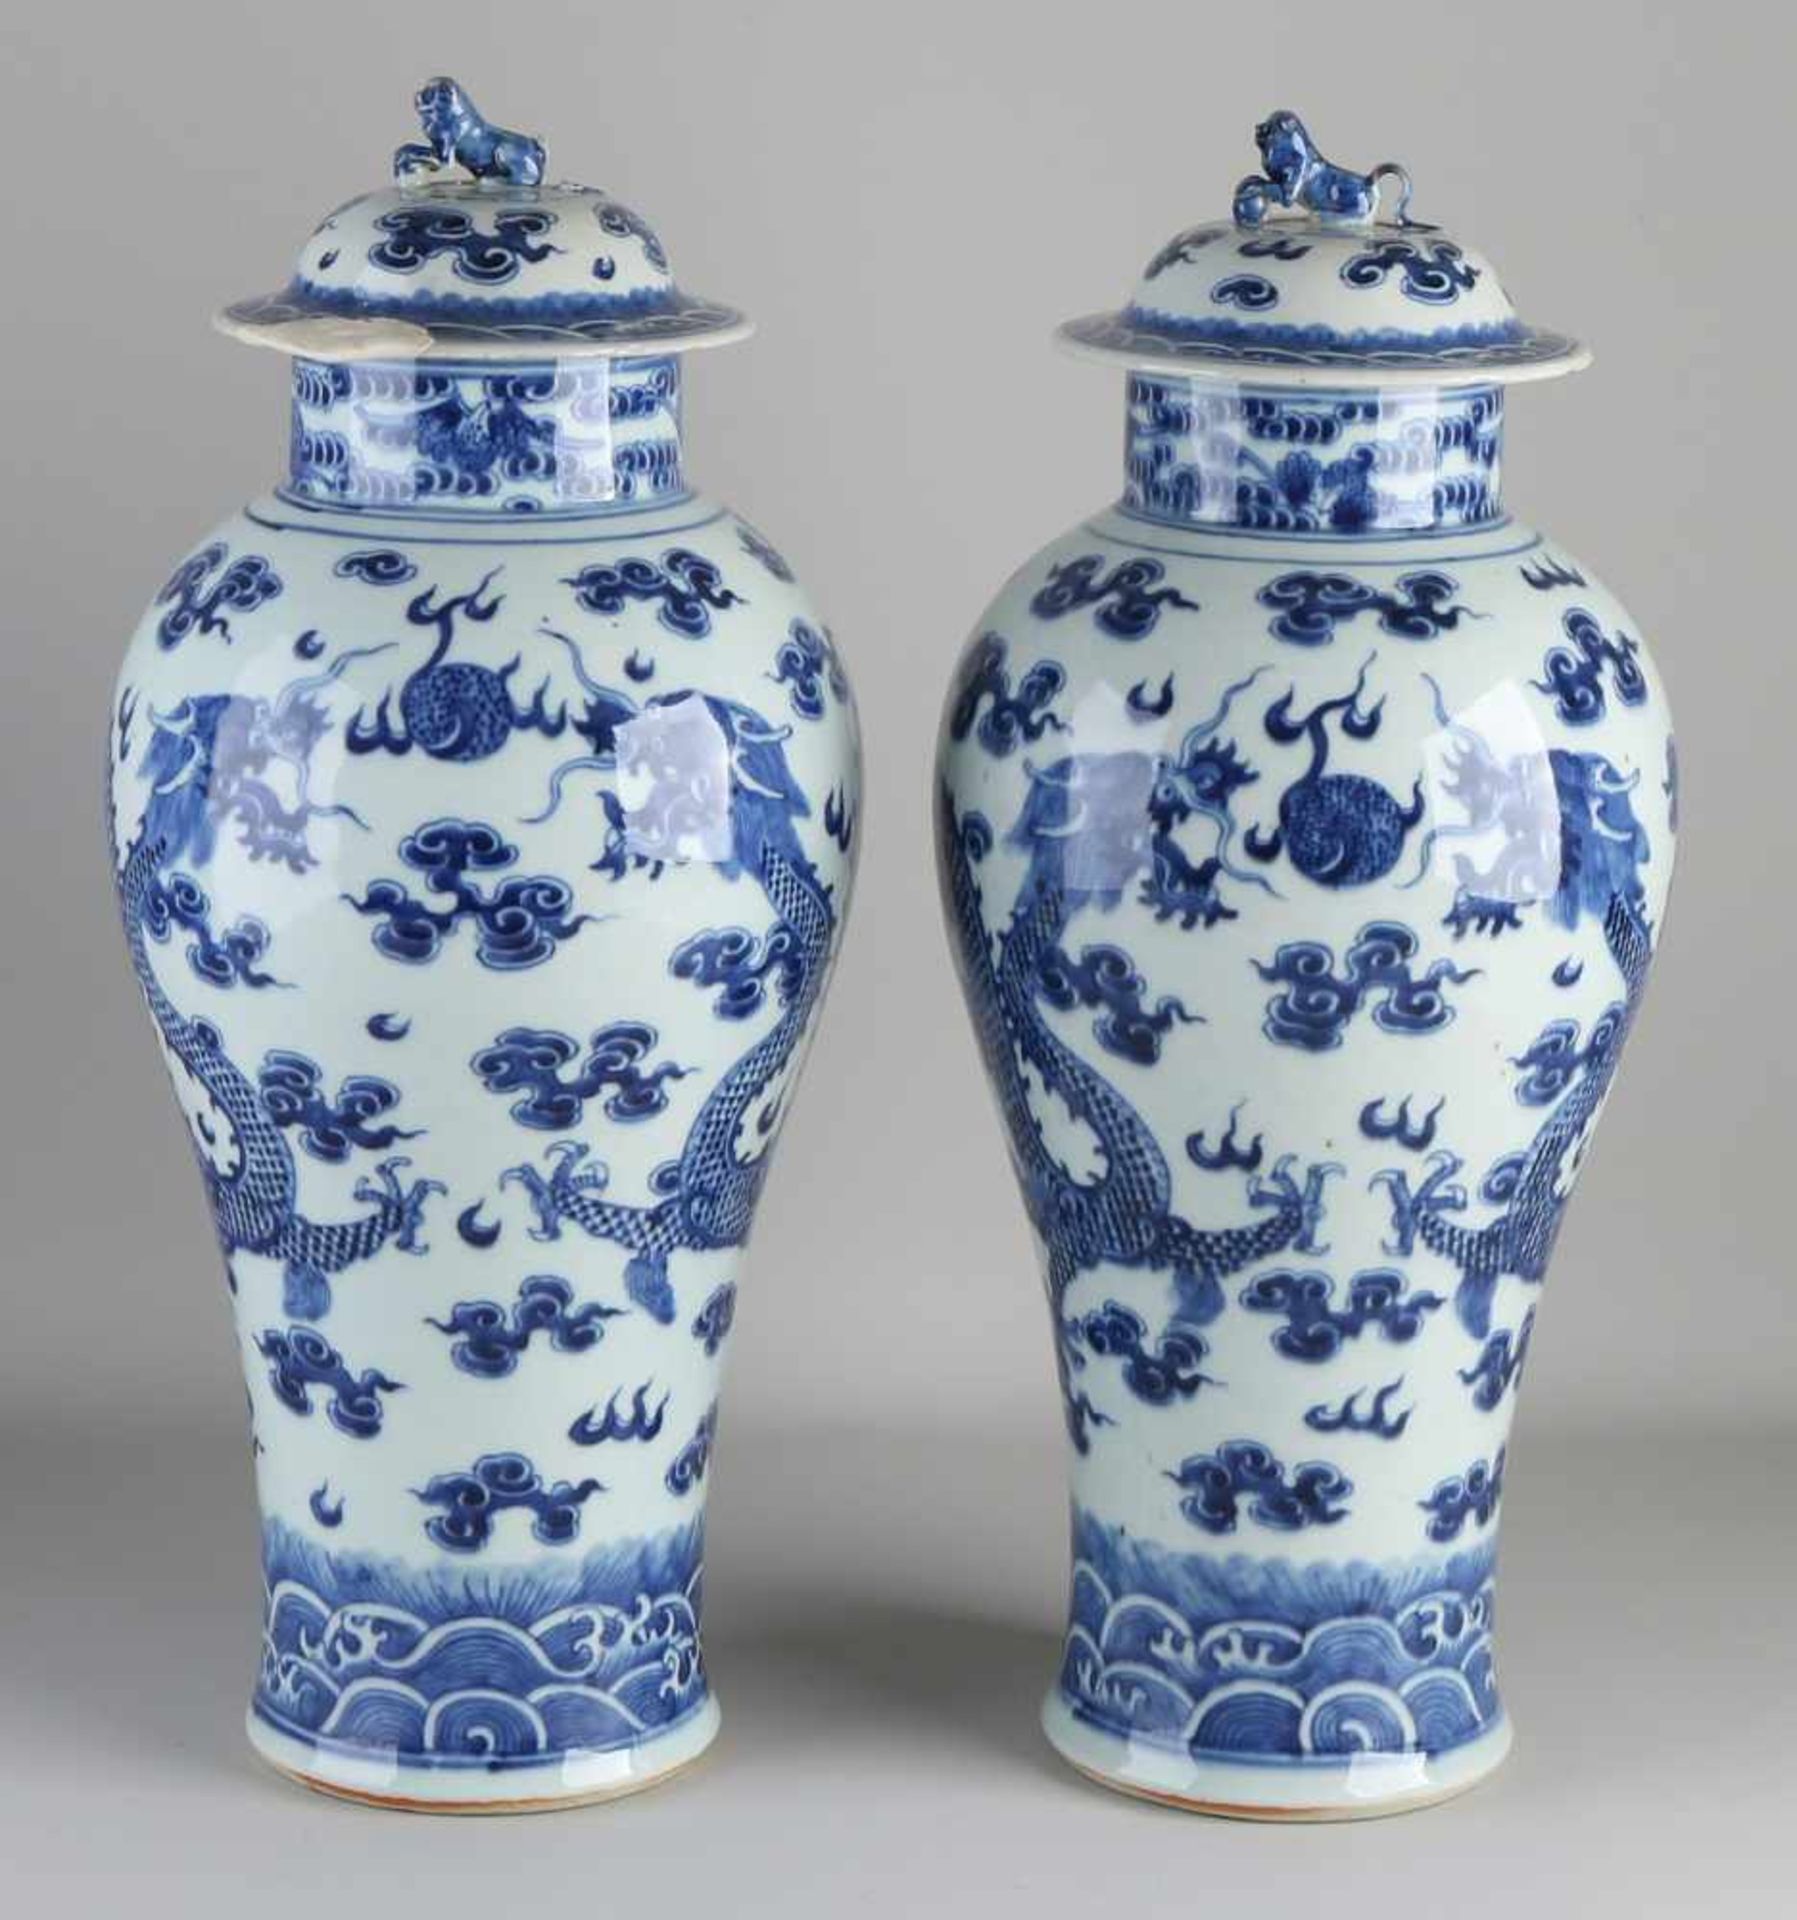 Zwei Vasen aus chinesischem Porzellan mit Deckel aus dem 17. - 18. Jahrhundert mit Drachen /